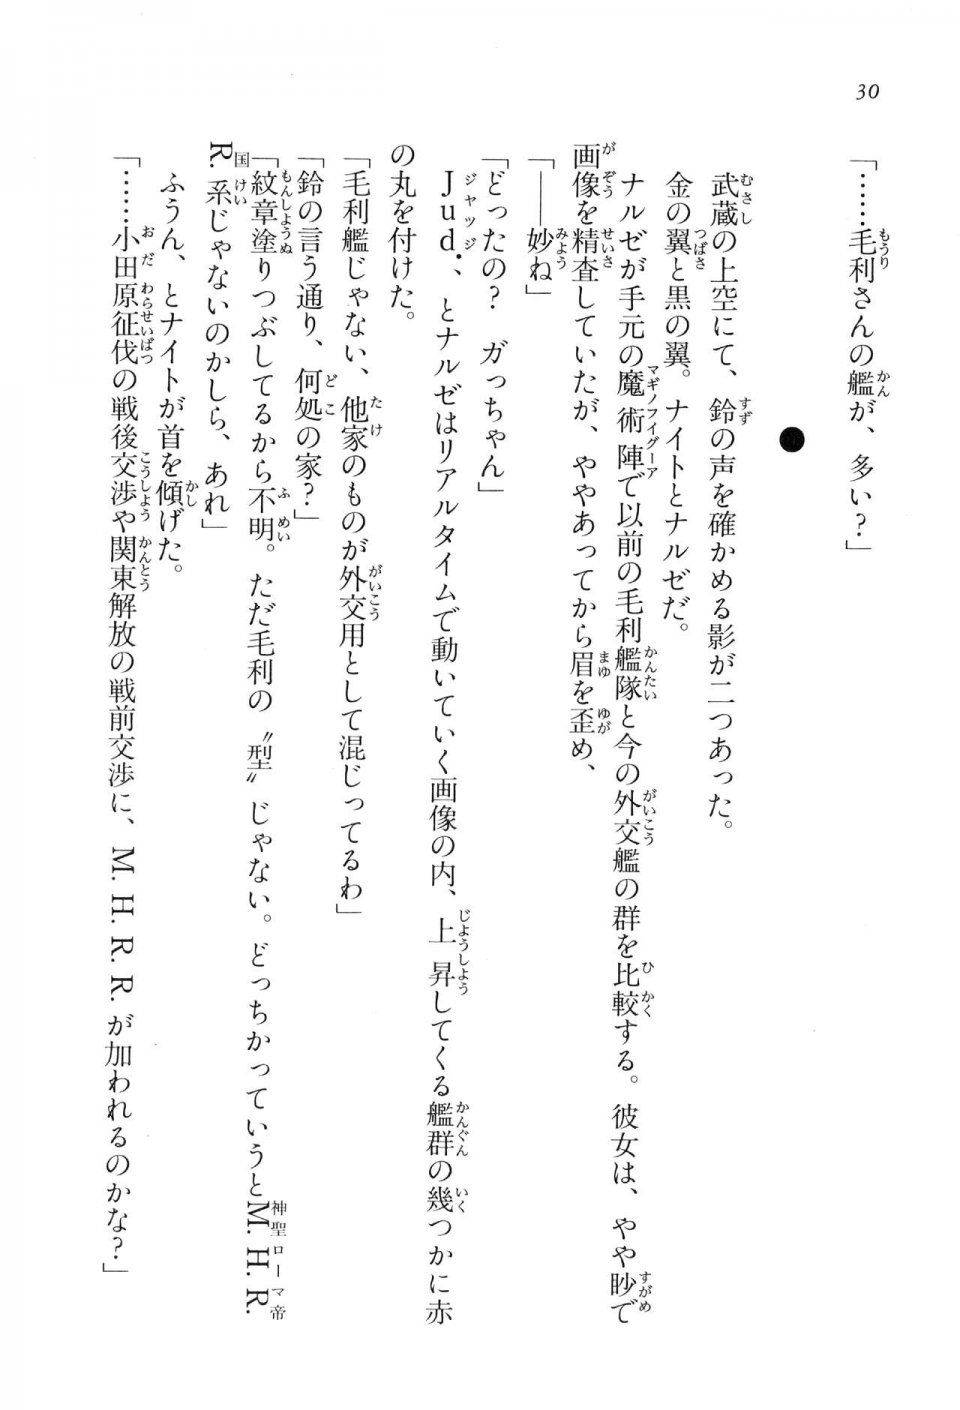 Kyoukai Senjou no Horizon LN Vol 16(7A) - Photo #30